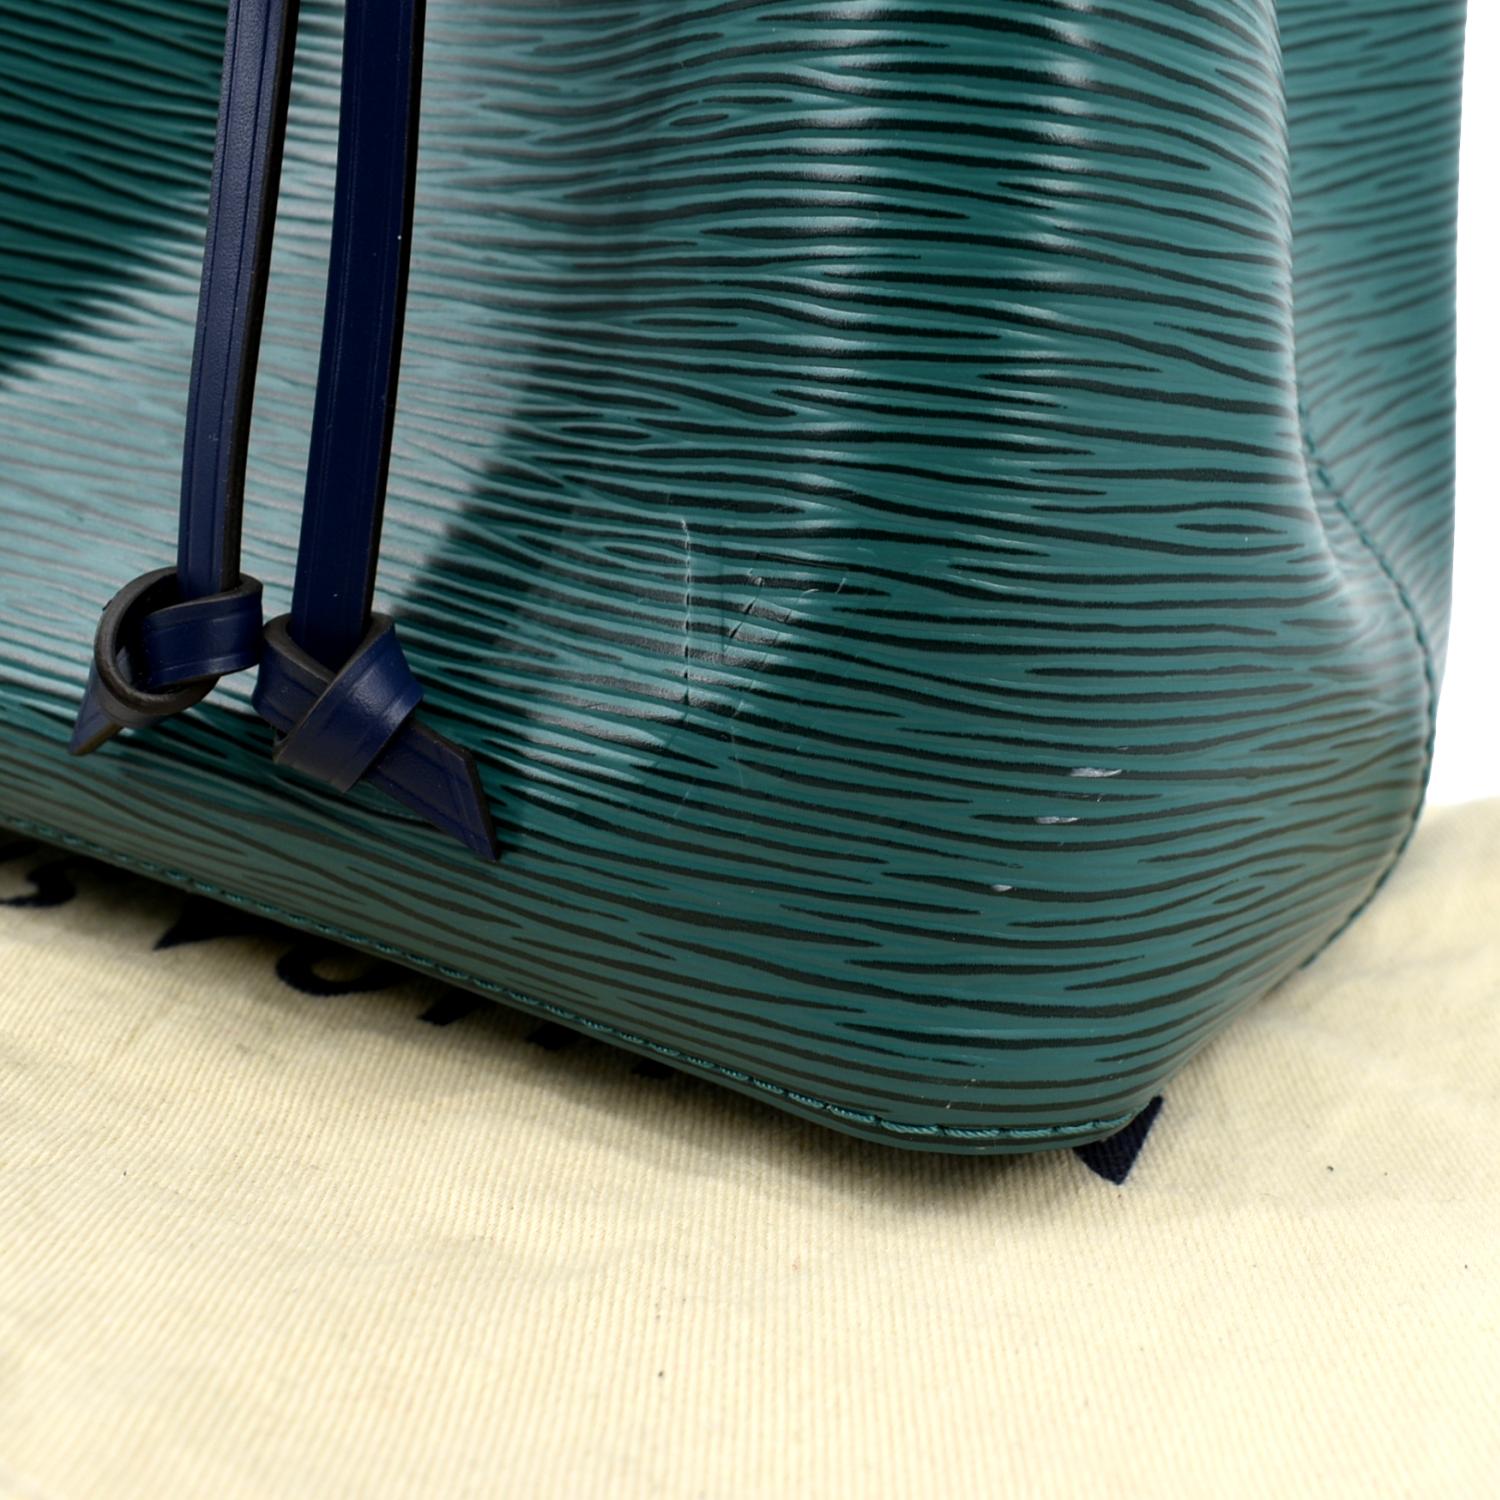 LOUIS VUITTON Louis Vuitton Neonoe BB epi leather shoulder bag handbag  M57691 turquoise blue. | eLADY Globazone